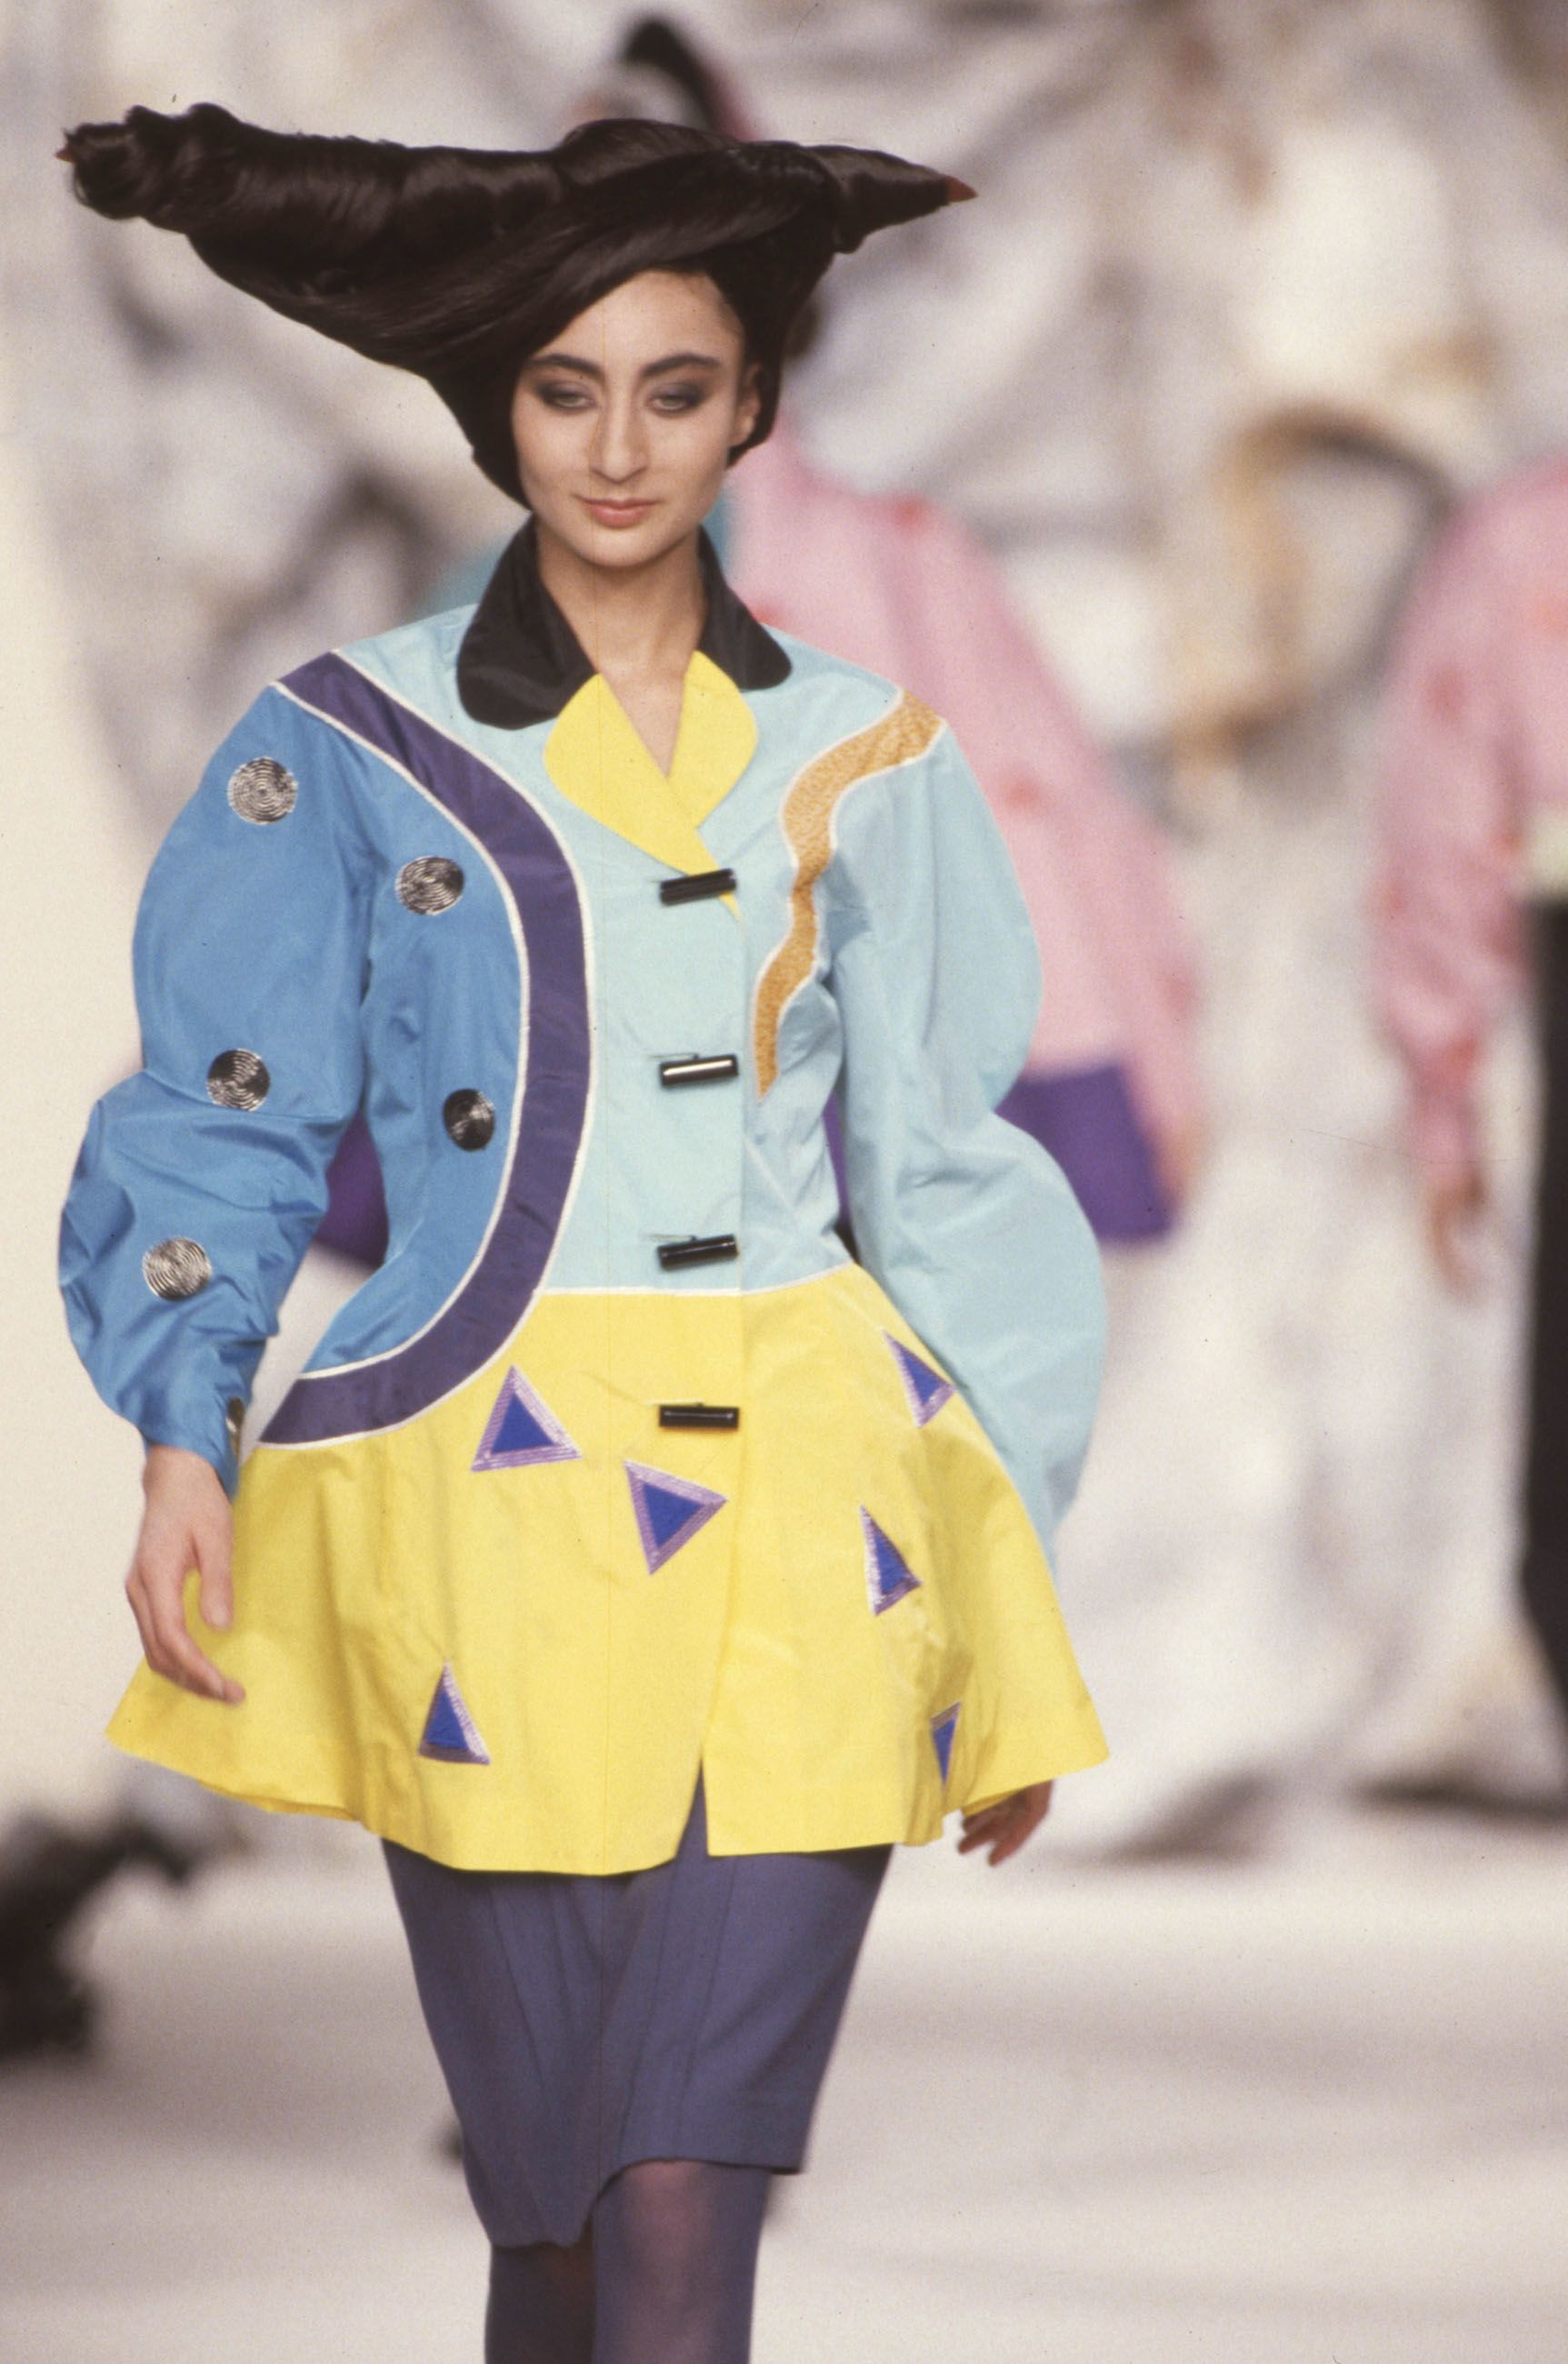 Japanese fashion designer Kansai Yamamoto dies at 76 - RTF